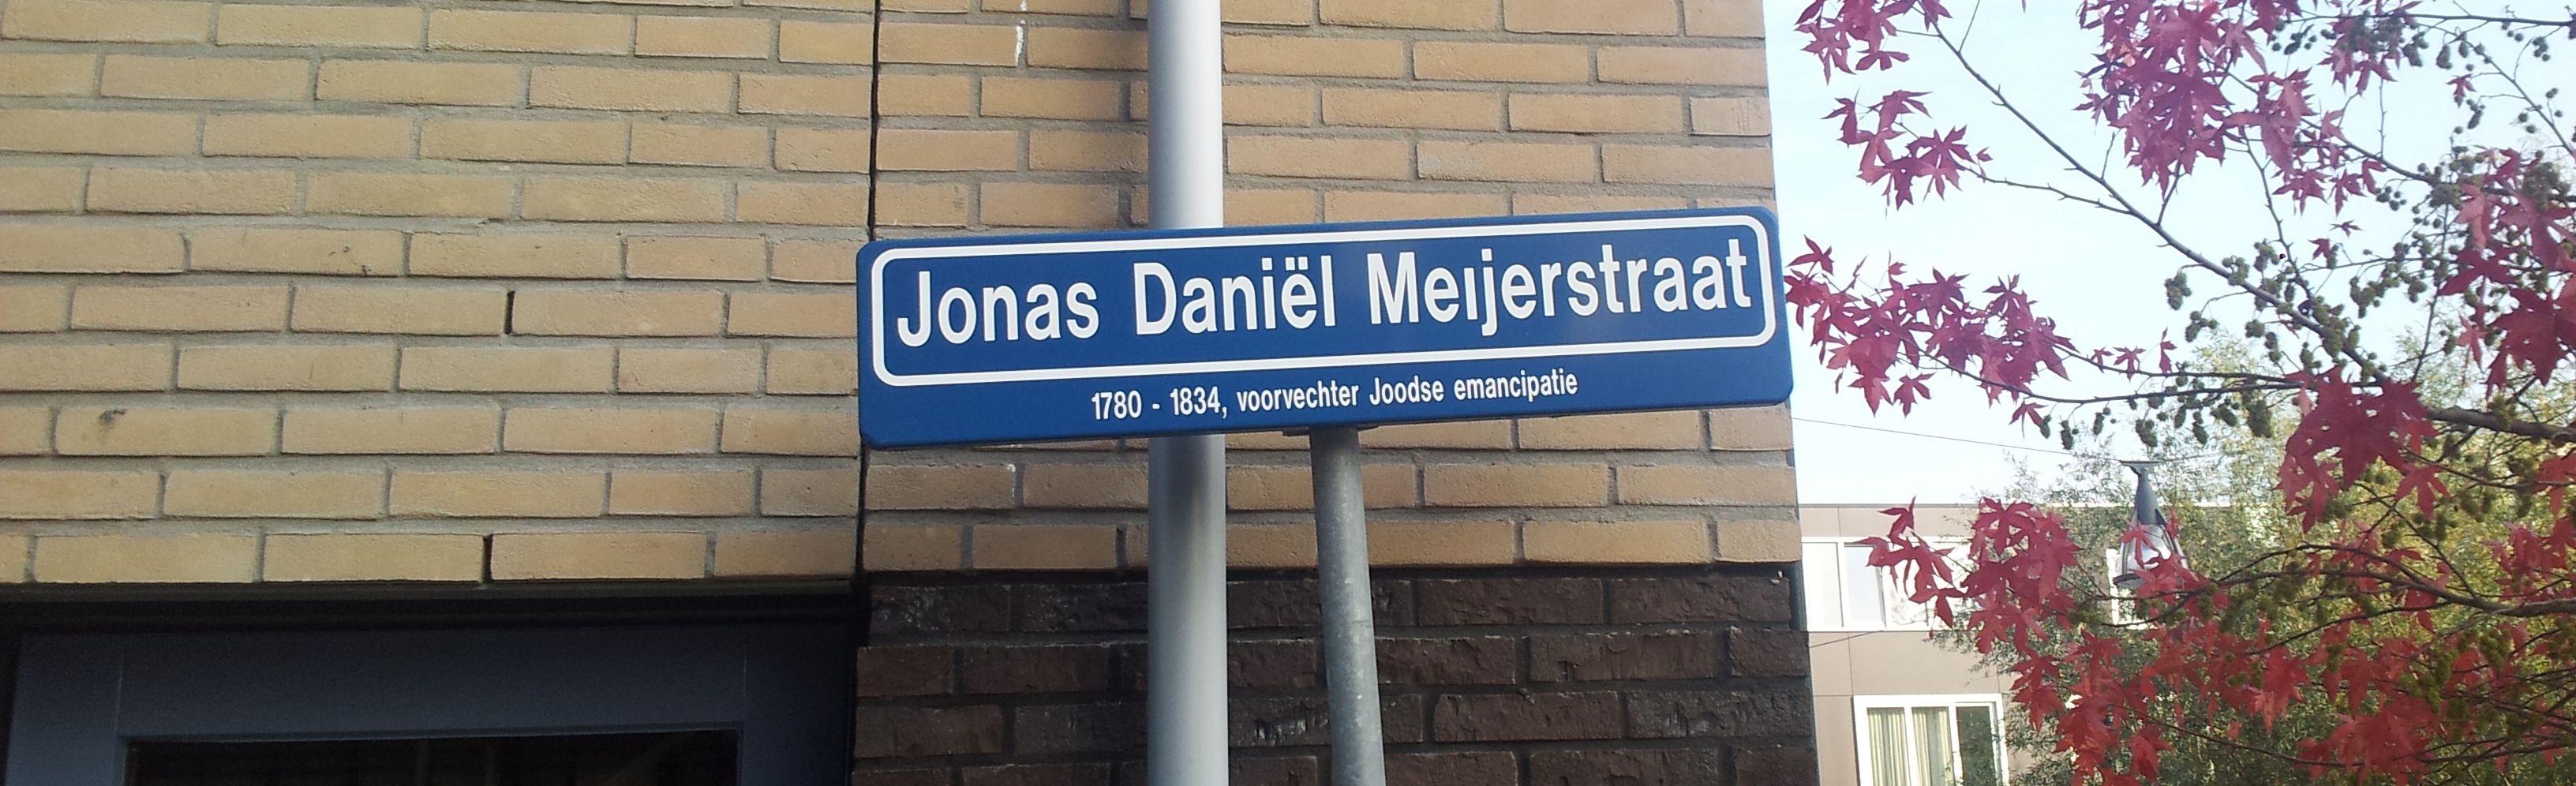 Jonas Daniel Meijerstraat Leiden 2014 2